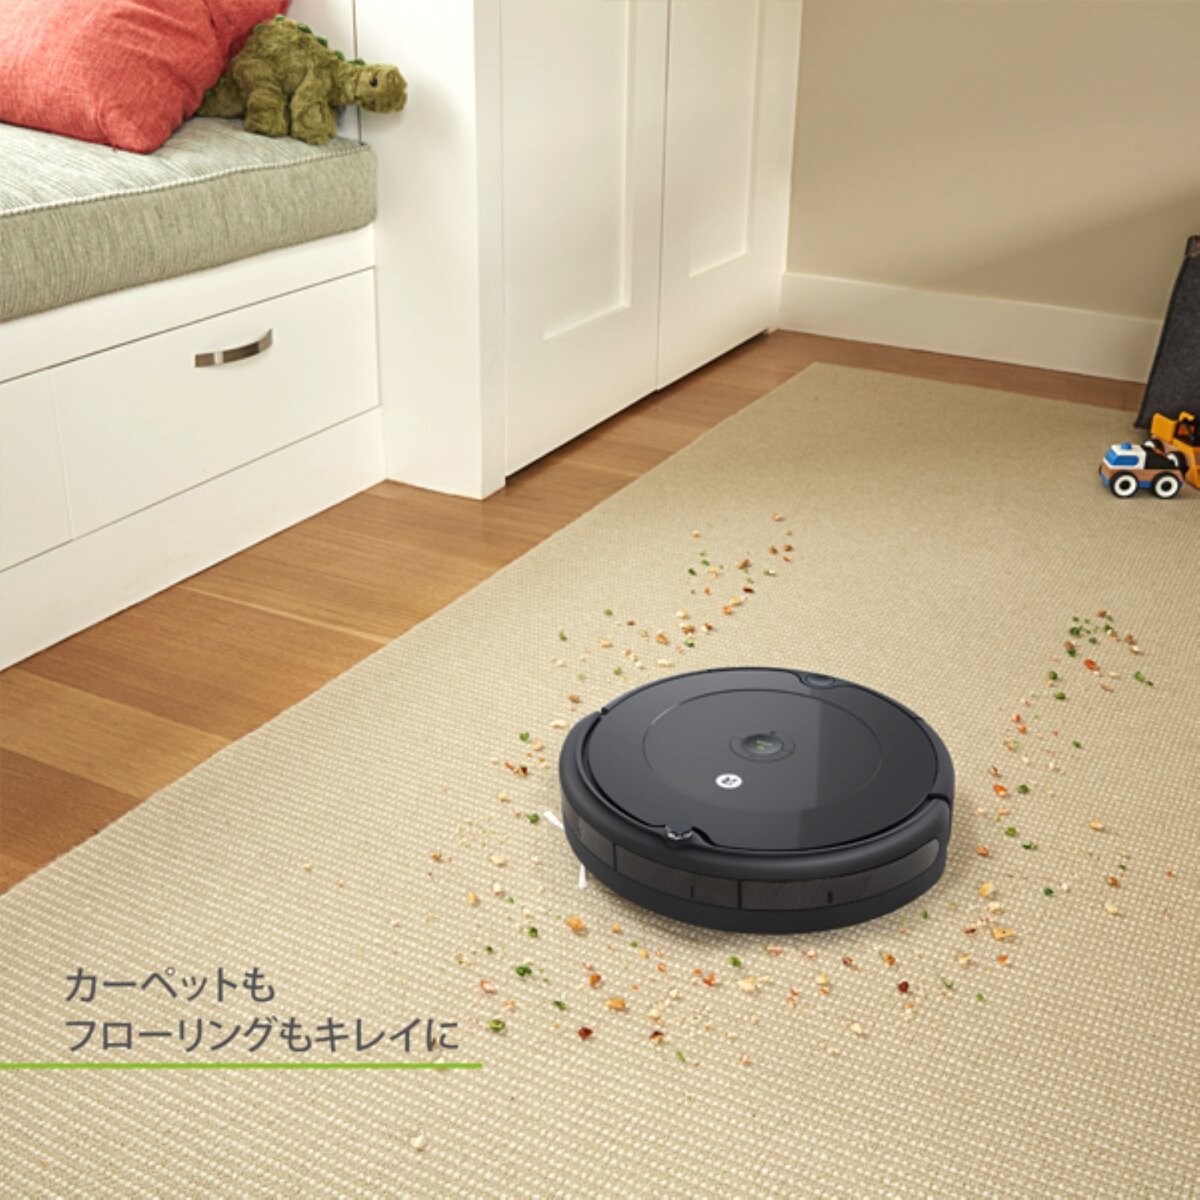 アイロボット ルンバ693 | Costco Japan